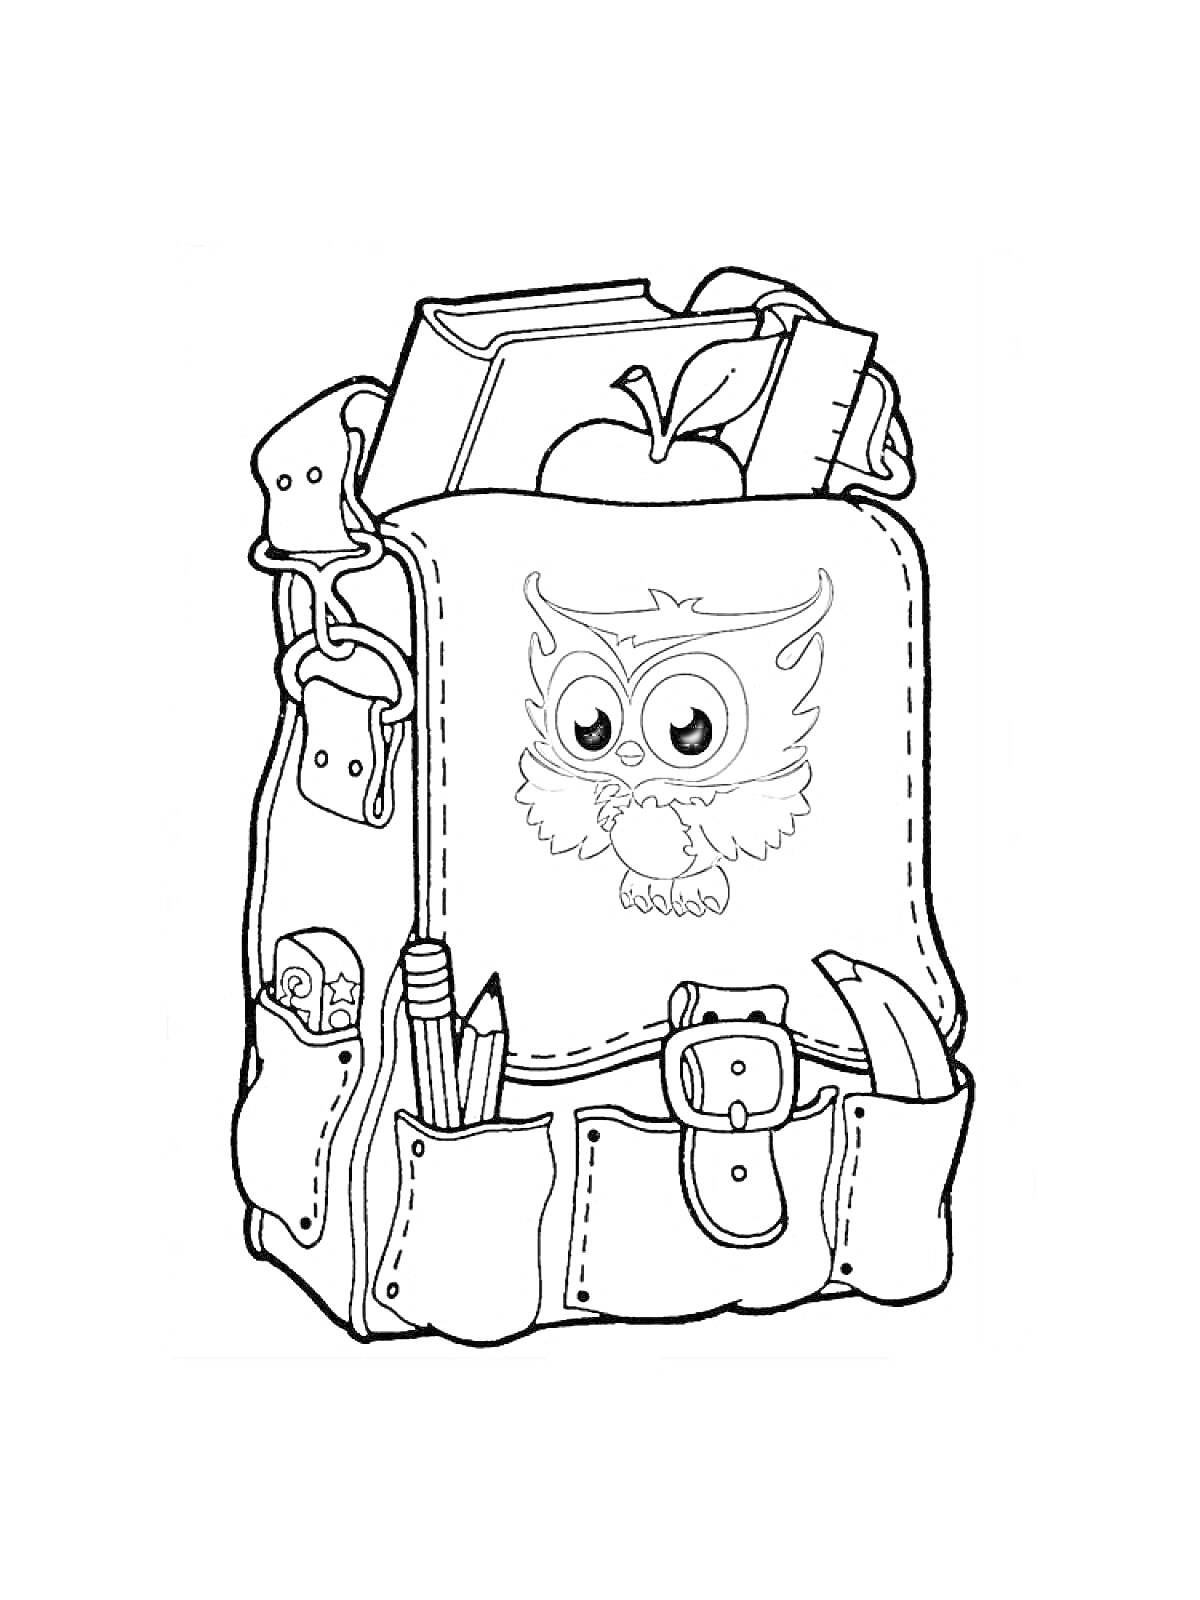 Портфель с пайеткой, учебниками, яблоком, карандашами, линейкой и фломастером